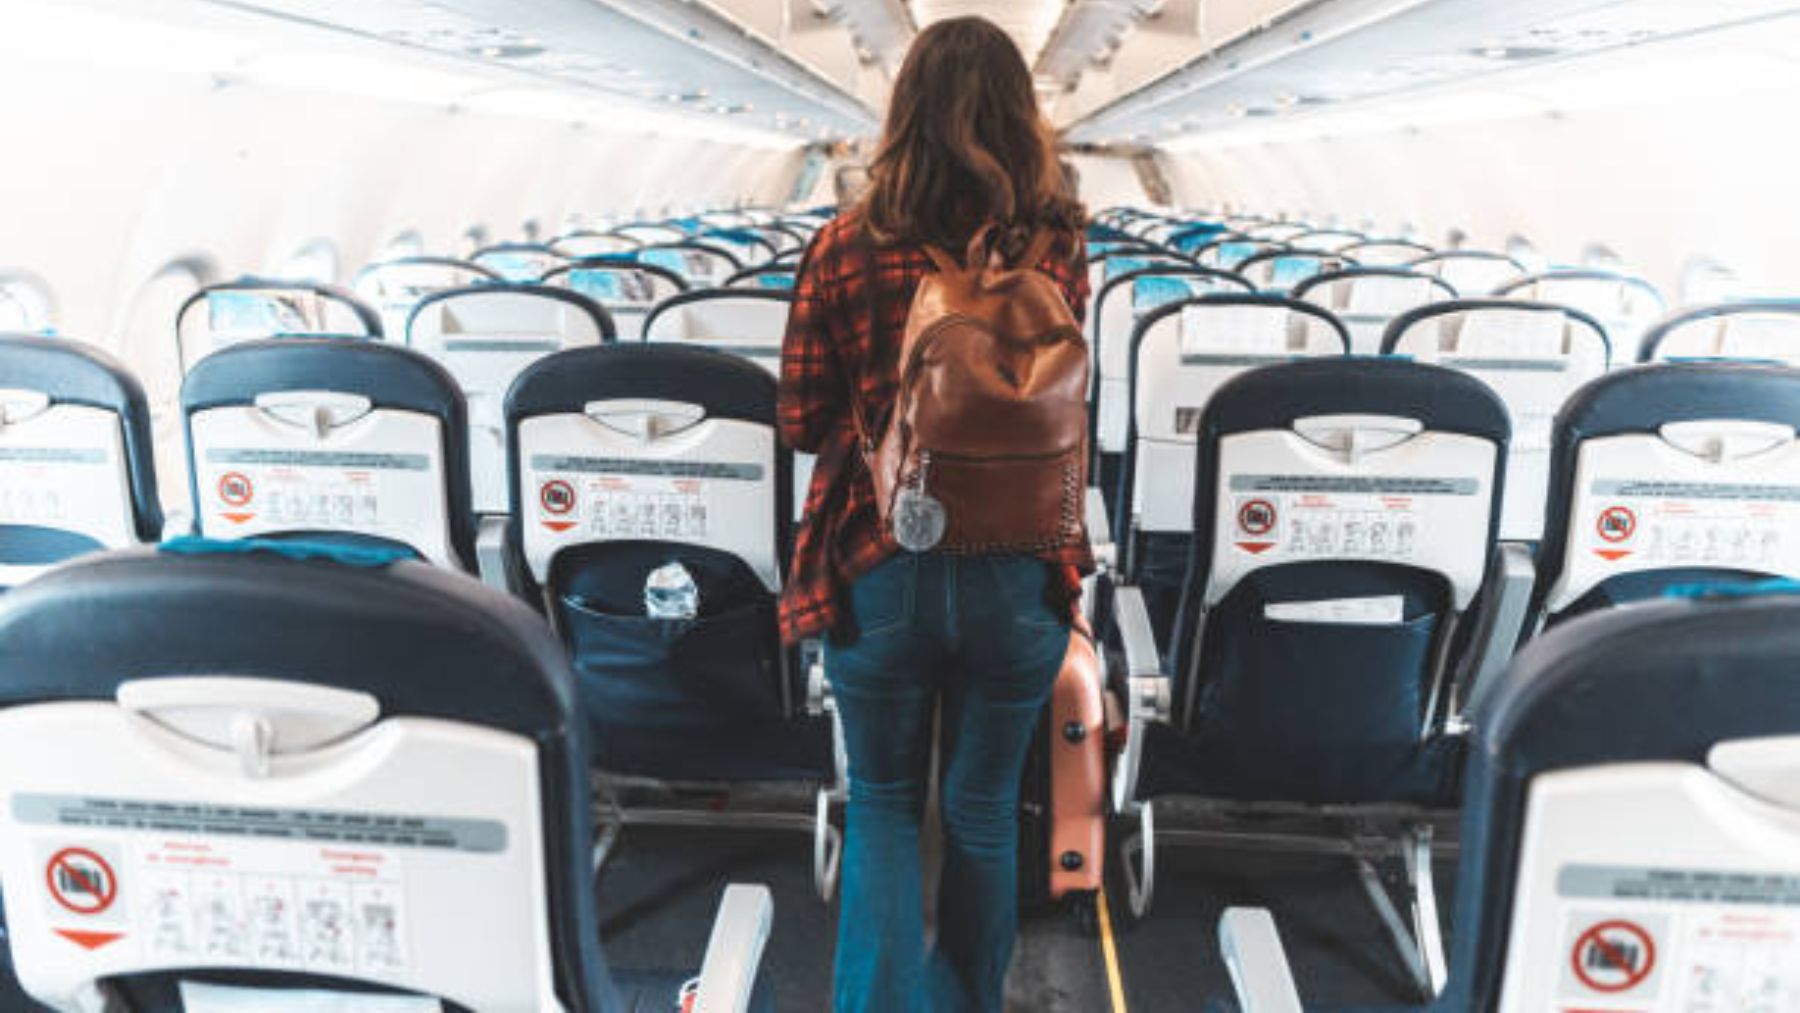 La mochila viral con la que podrás viajar en avión sin pagar por tu  equipaje